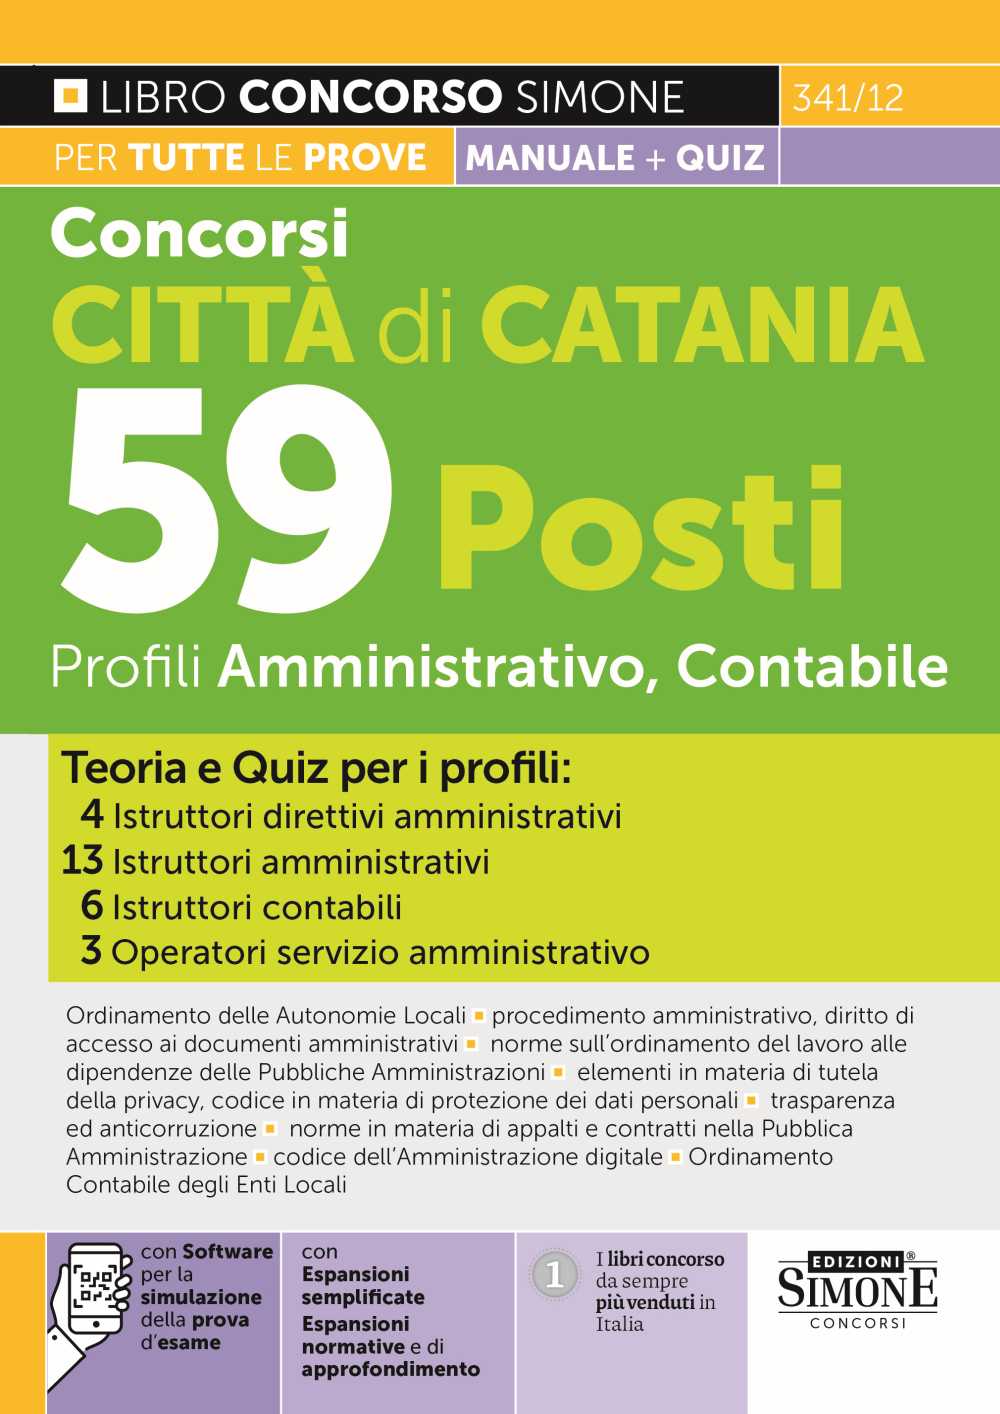 Concorso Città di Catania 2023 - 59 posti